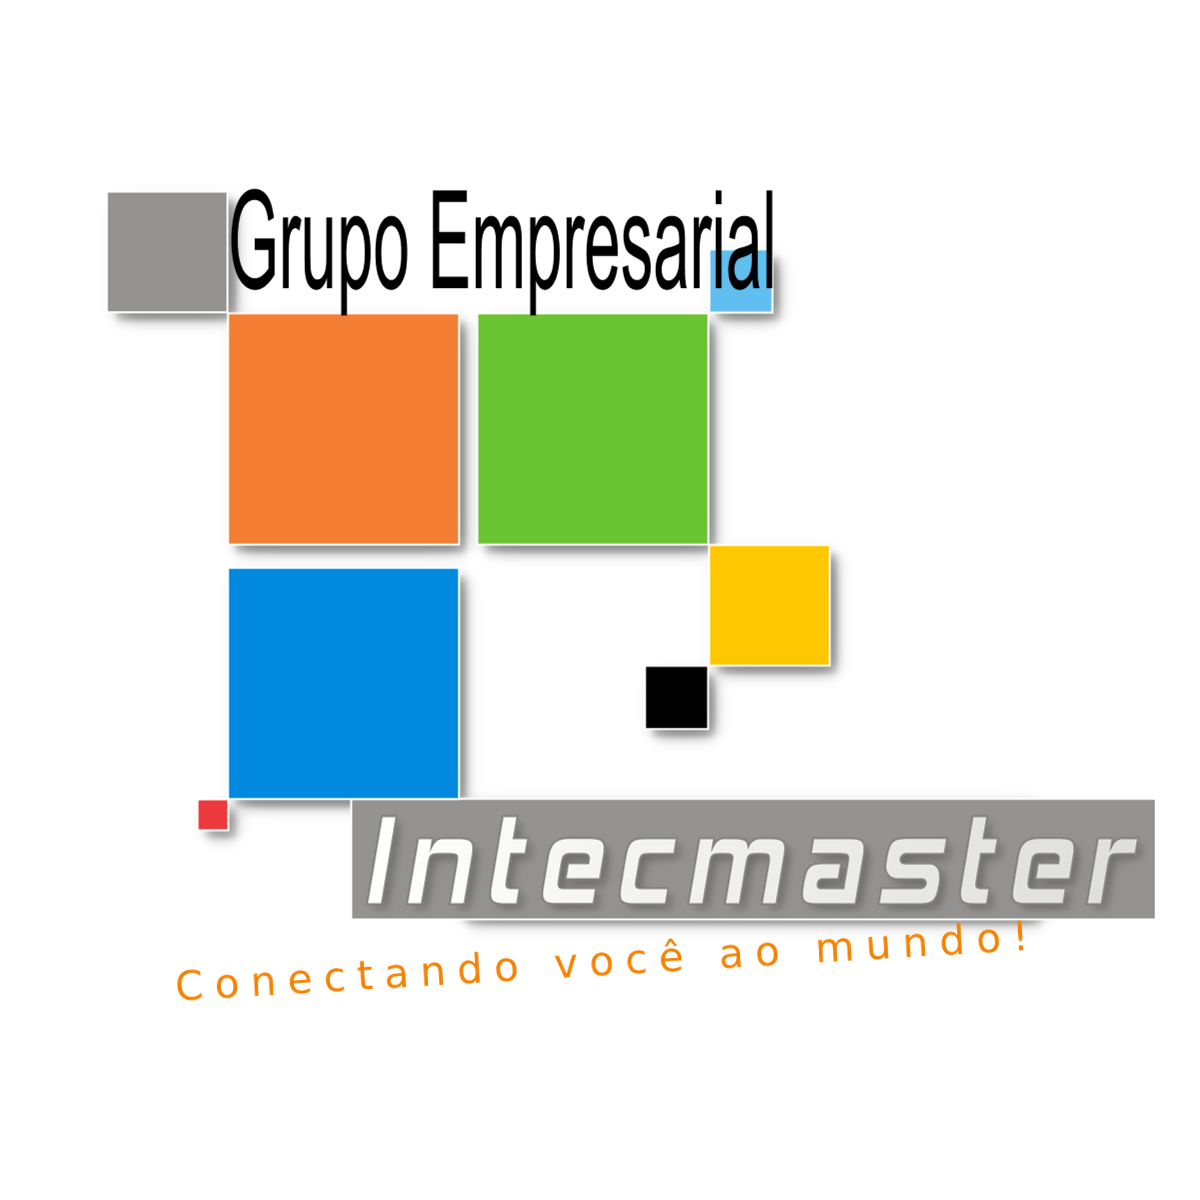 Intecmaster